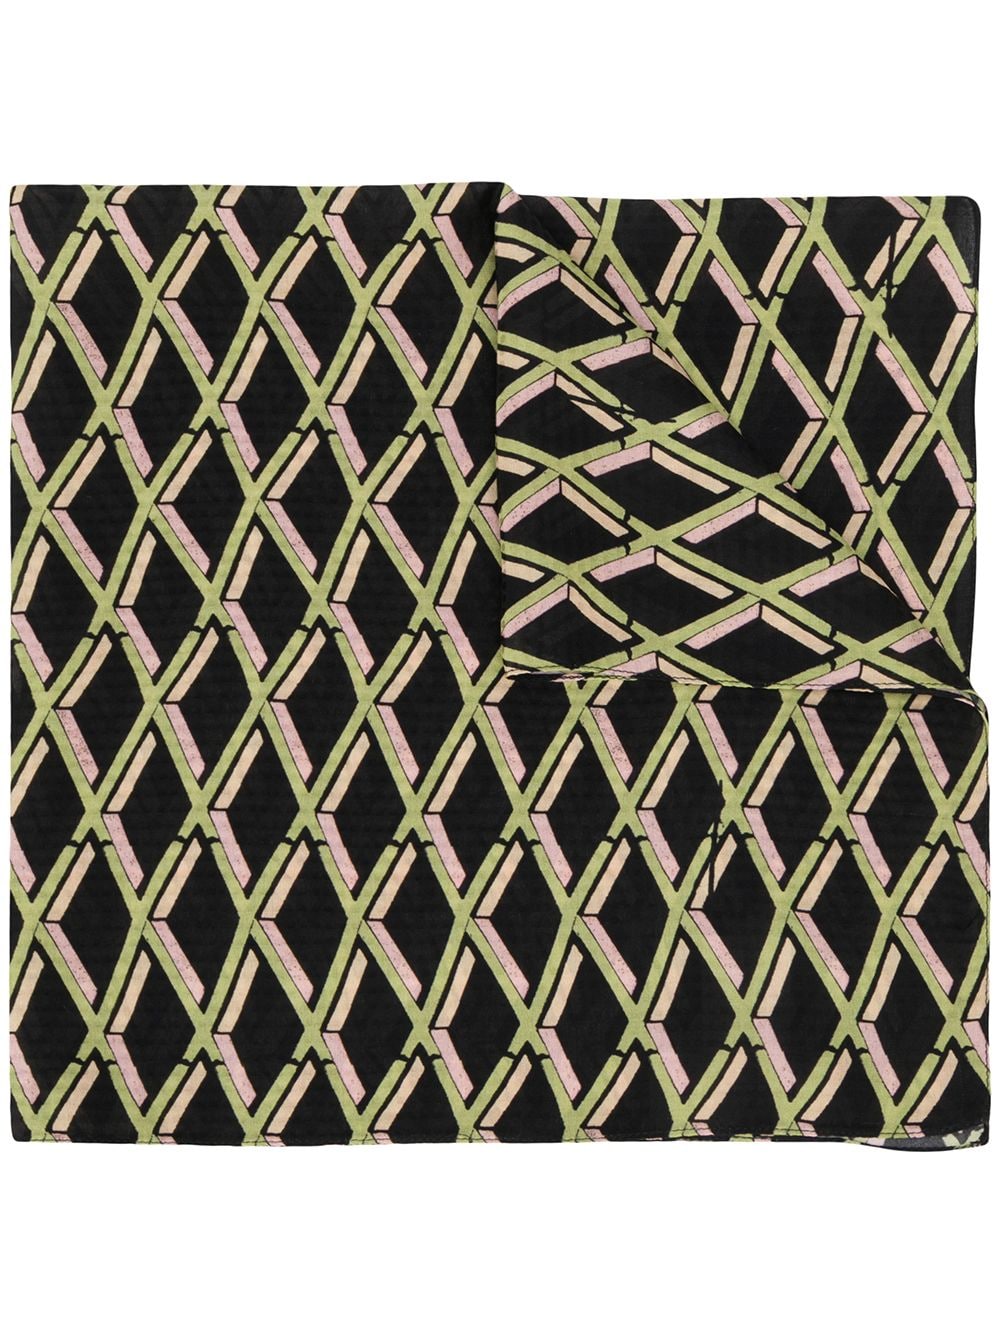 фото Preen by thornton bregazzi платок с геометричным принтом